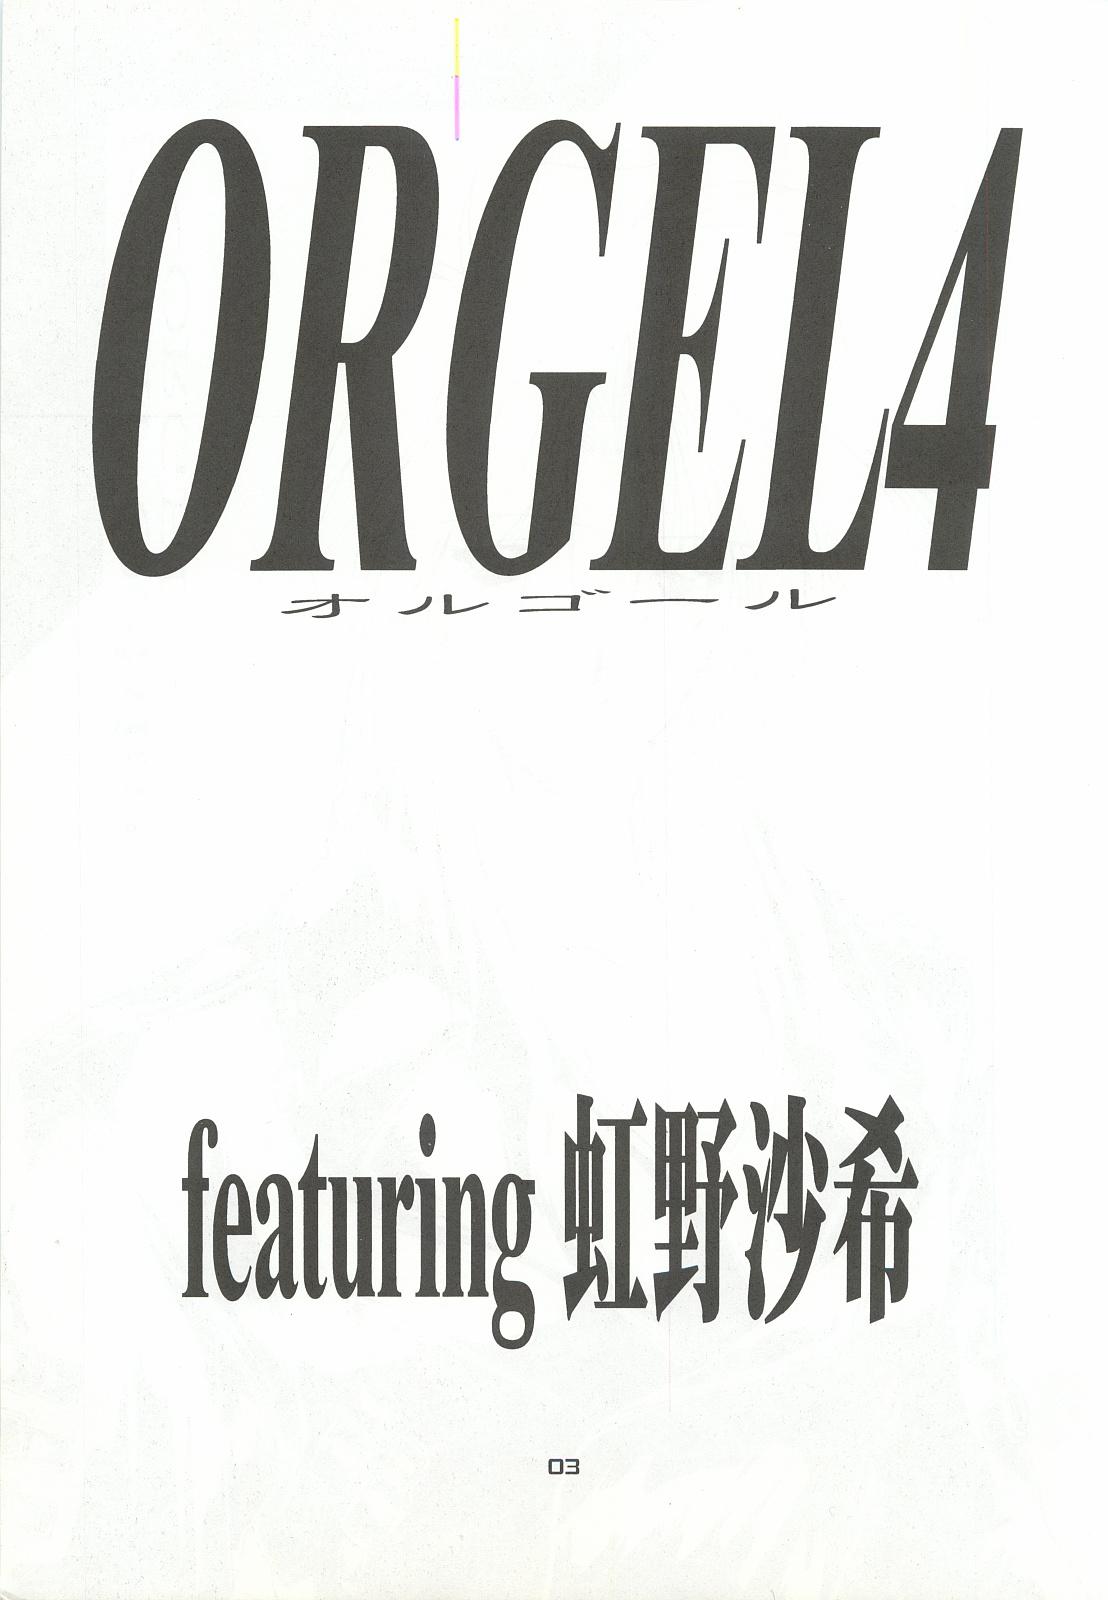 ORGEL 4 featuring Nijino Saki 1